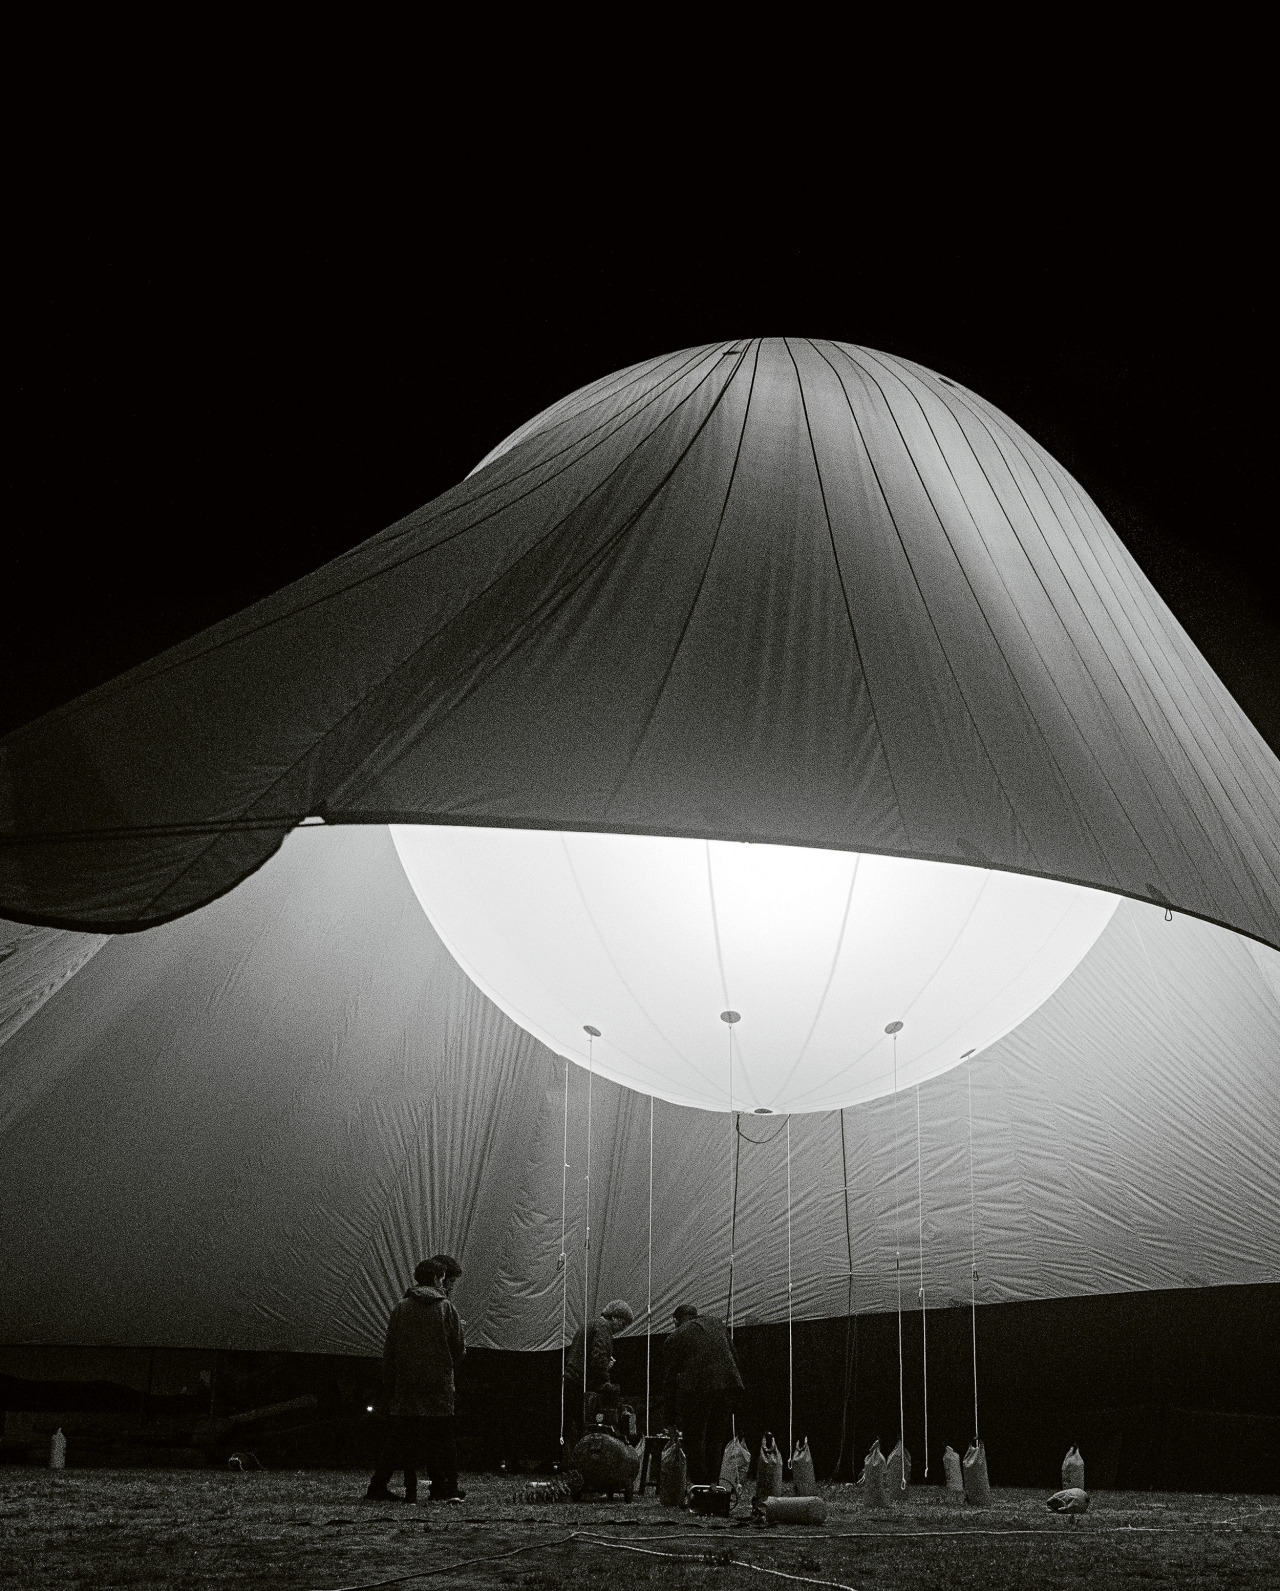 1225027:
“Helium Pavilion, Jose Maria Sanchez
”